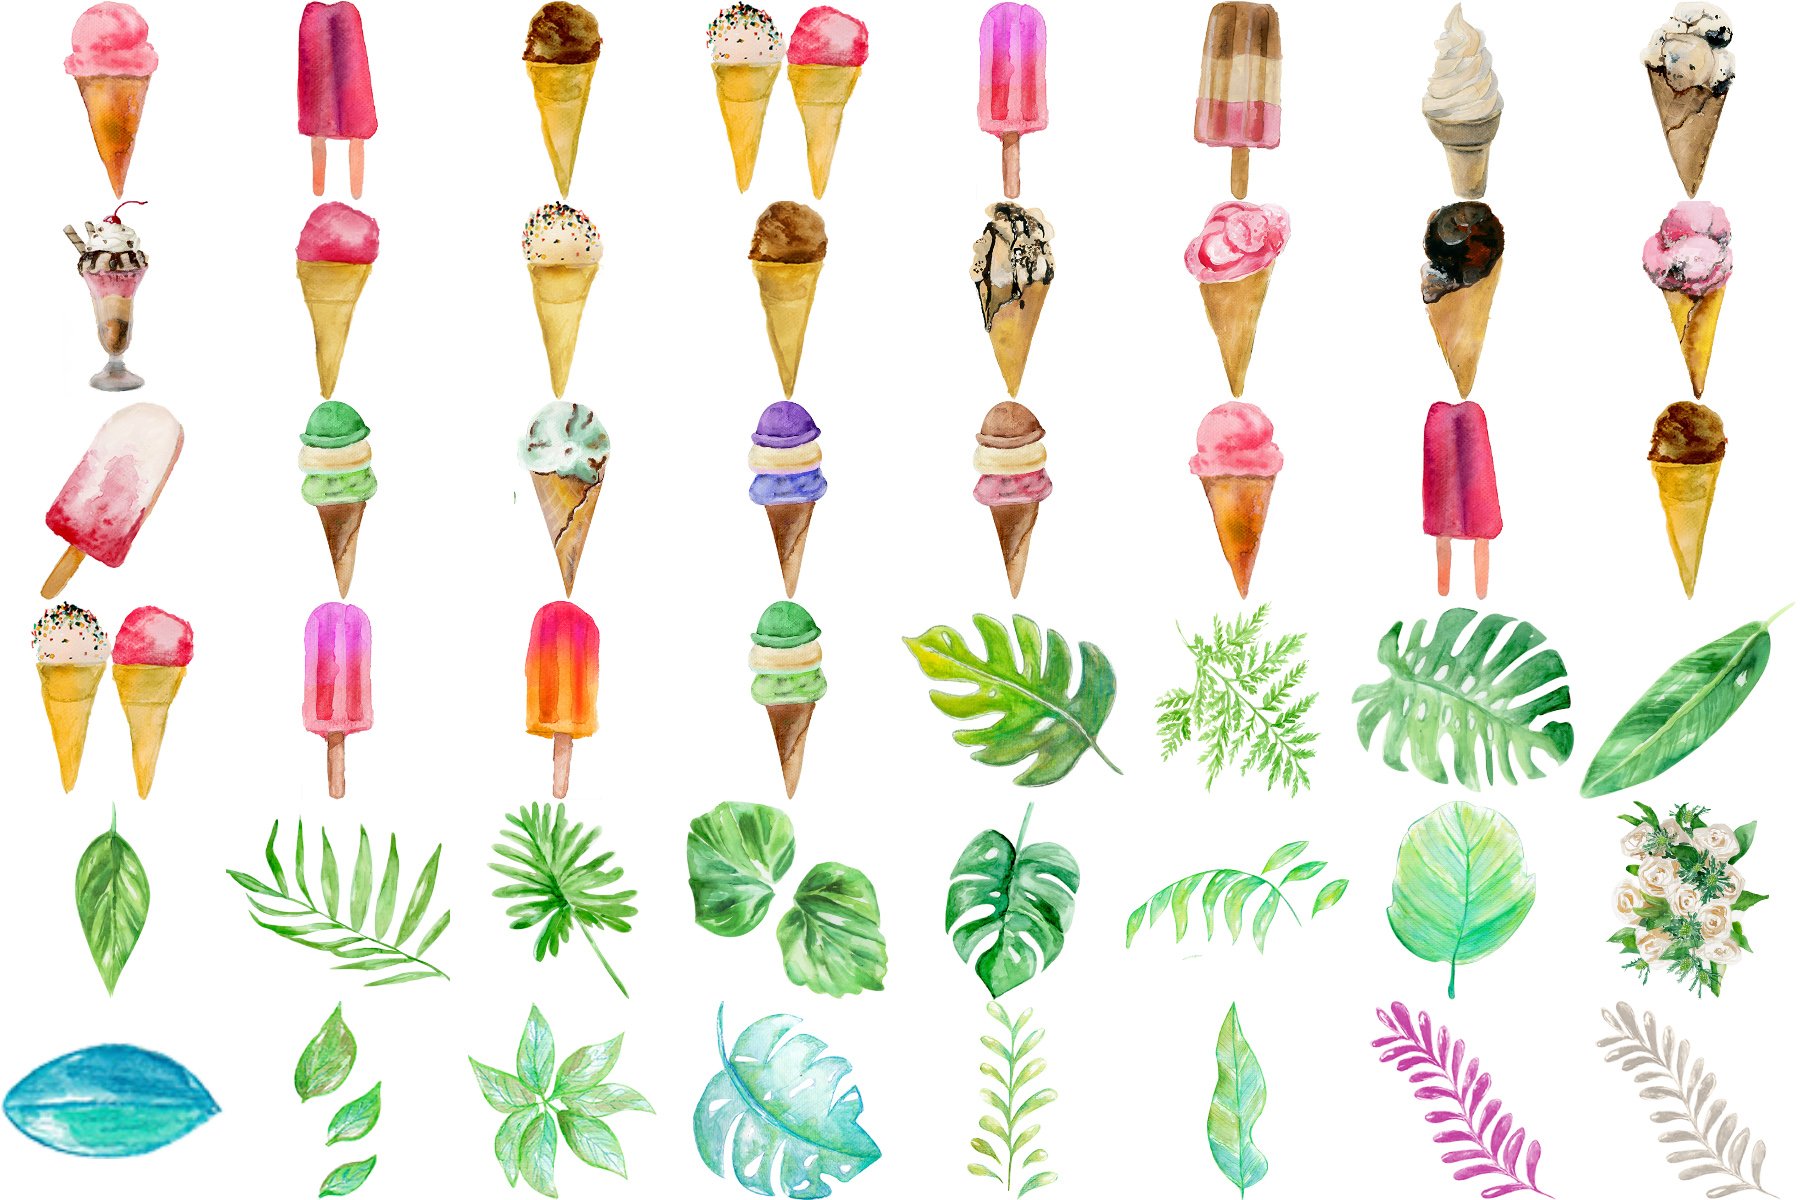 Watercolor ice creams and plants.